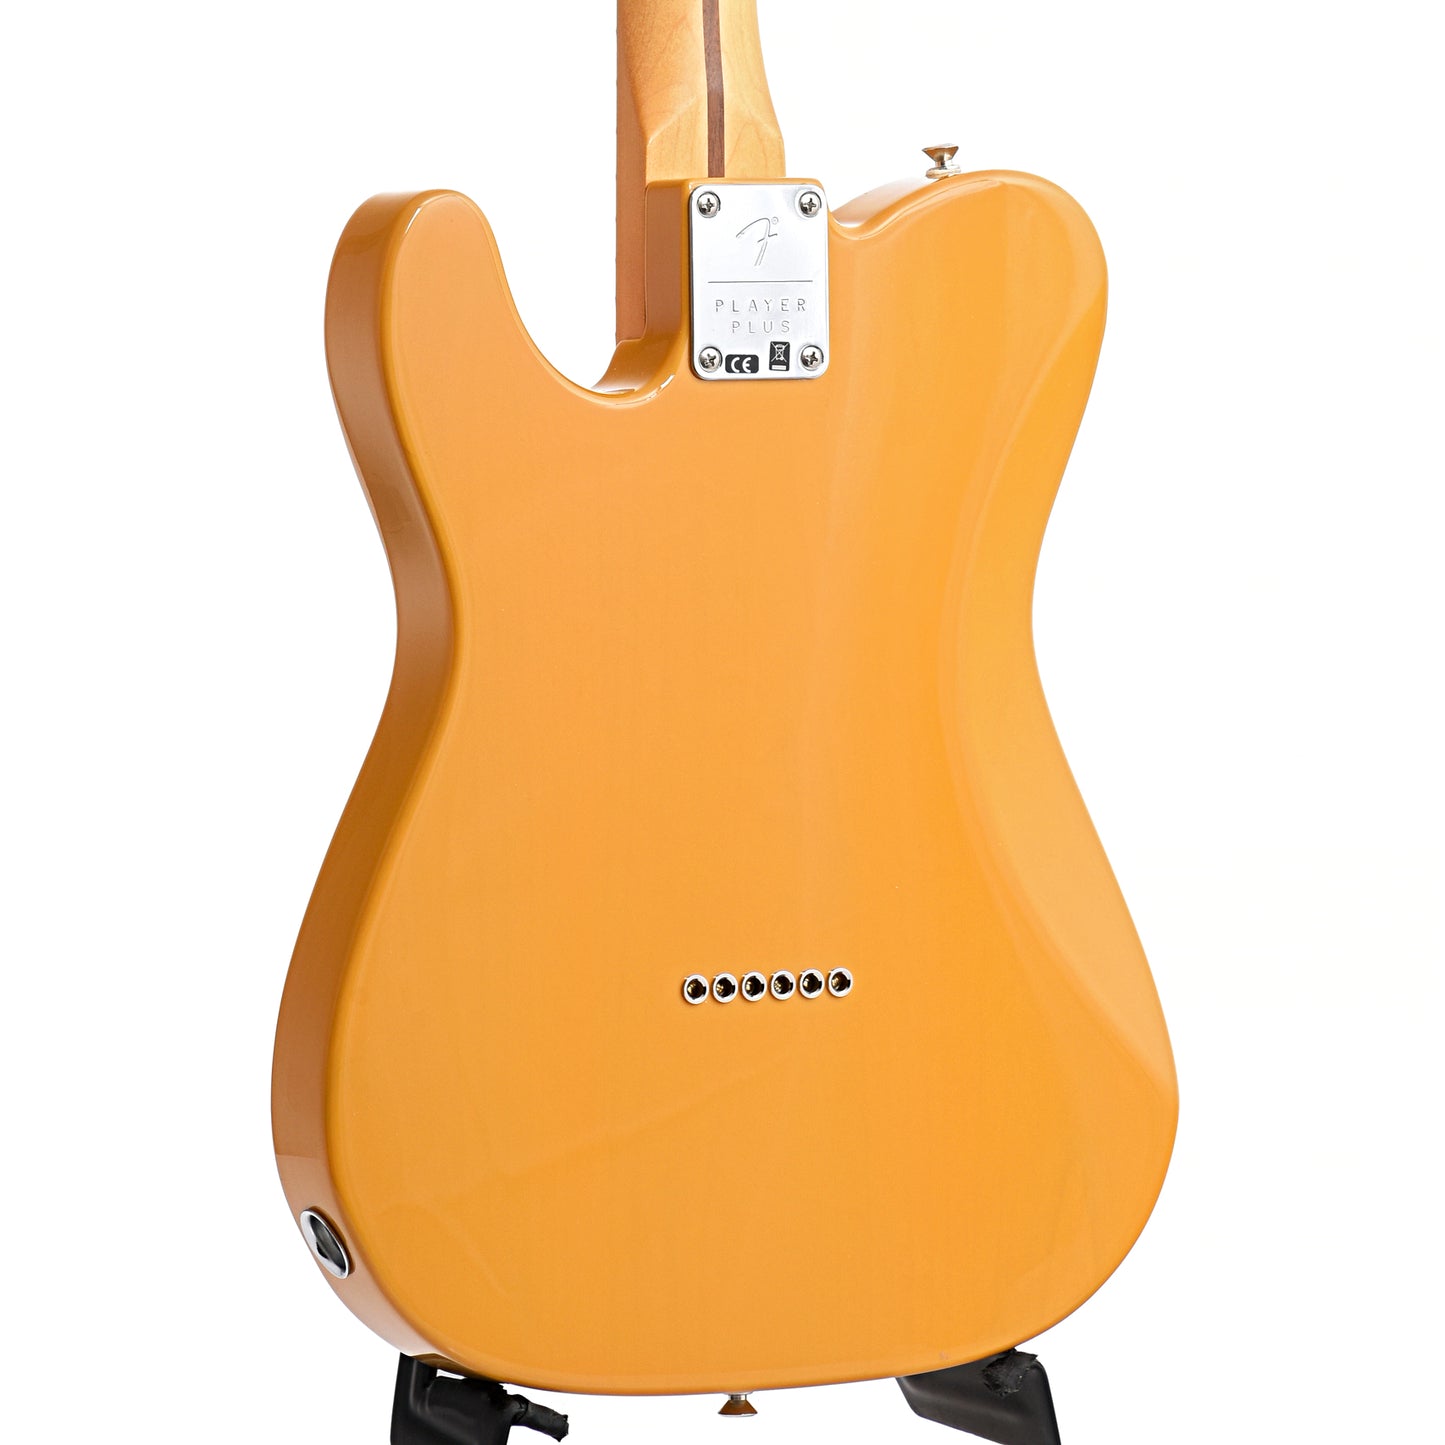 Back and Side of Fender Player Plus Nashville Telecaster